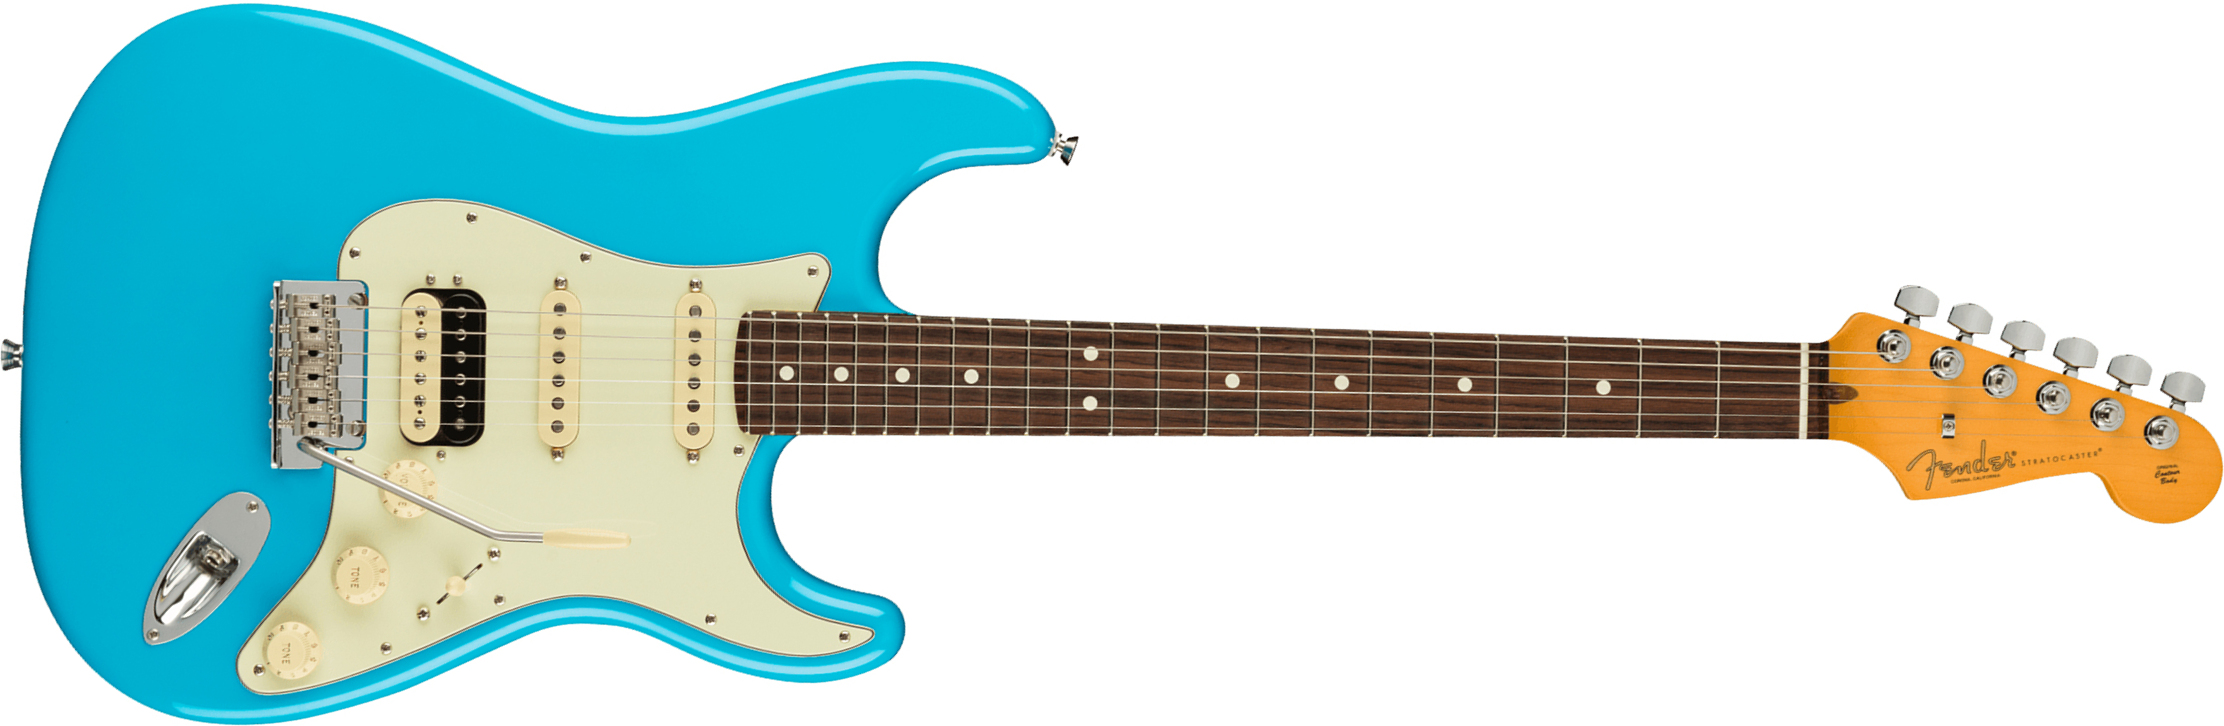 Fender Strat American Professional Ii Hss Usa Rw - Miami Blue - Elektrische gitaar in Str-vorm - Main picture